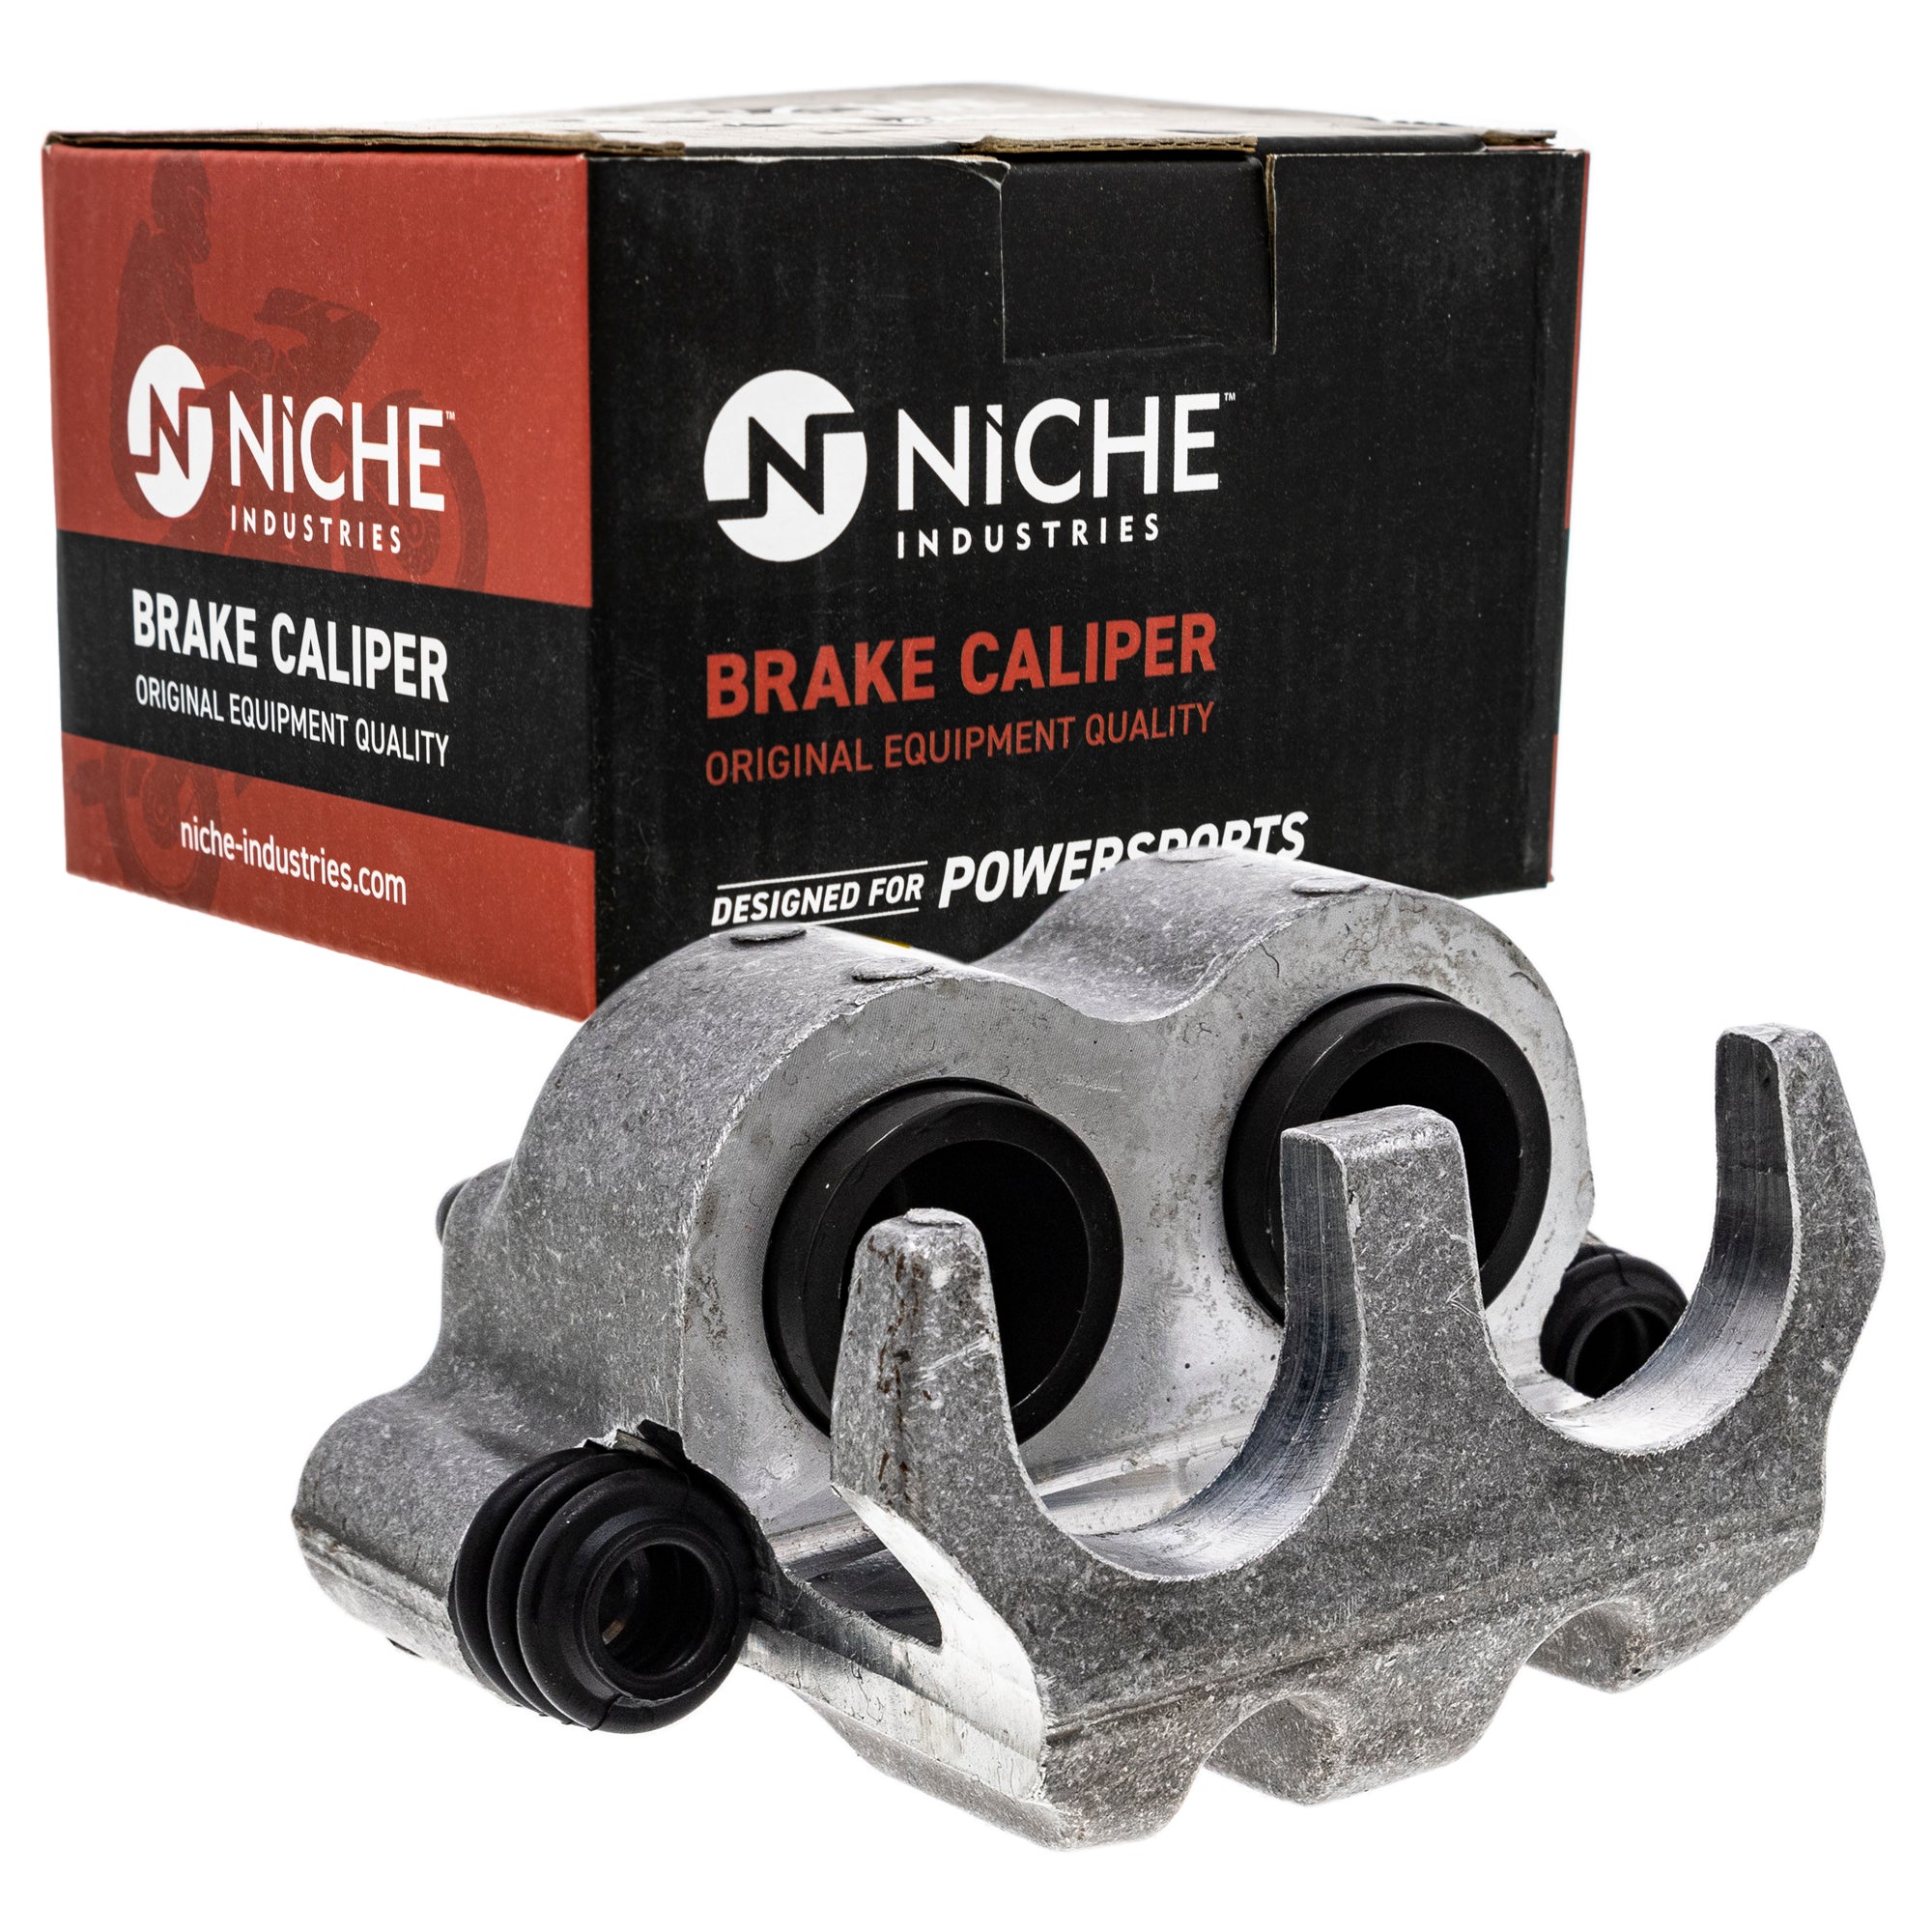 NICHE MK1001278 Brake Caliper Kit